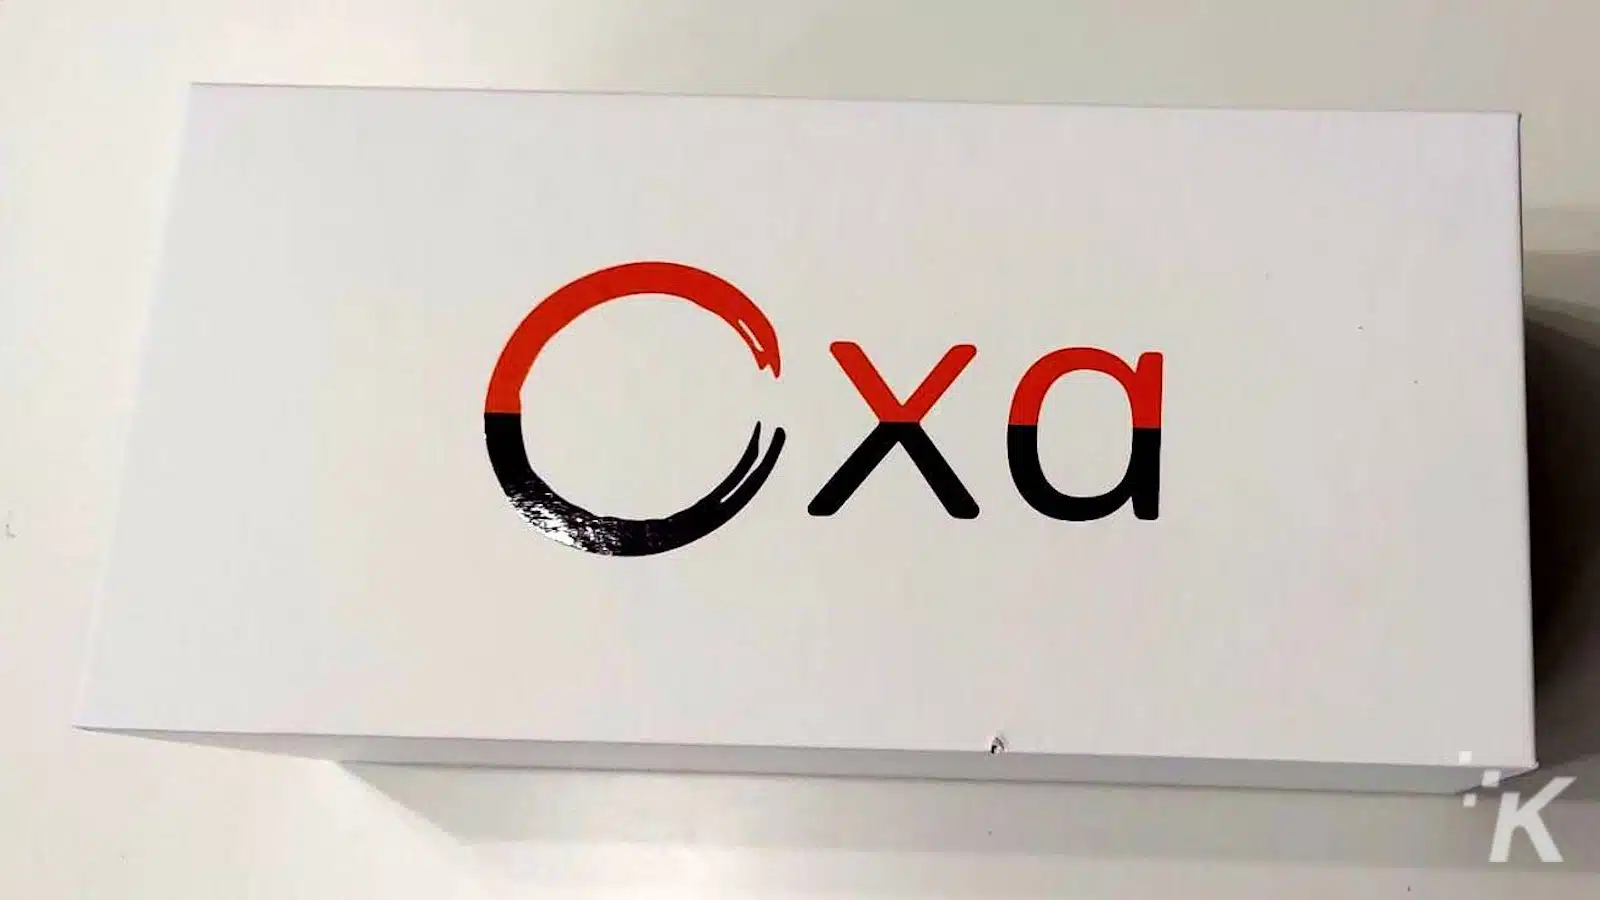 โลโก้พร้อมตัวอักษร 'Cxa' เป็นสีดำและสีแดง